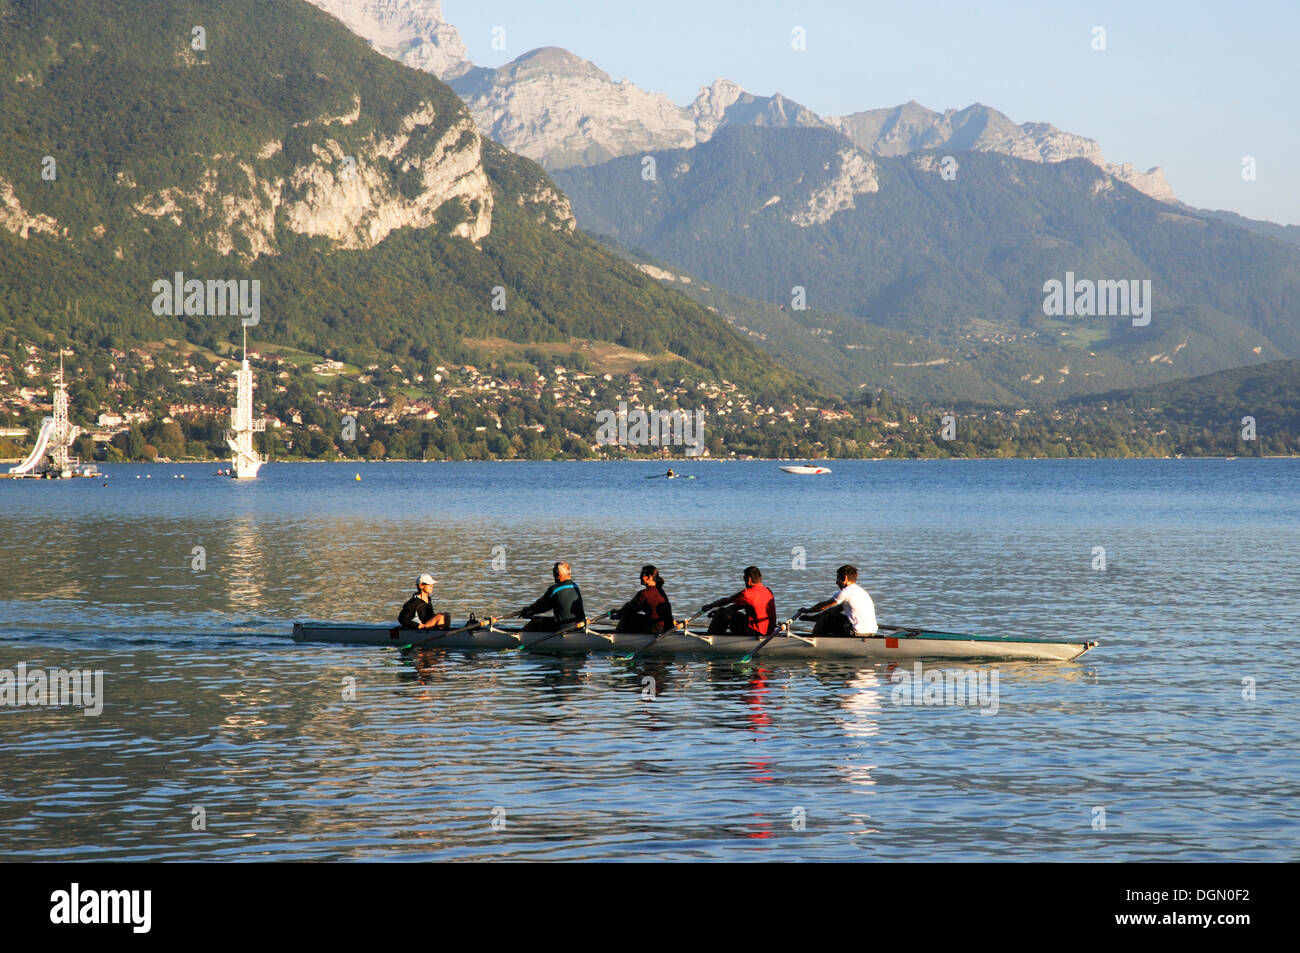 Une équipe d'aviron de compétition la pratique sur le lac d'Annecy, France Banque D'Images